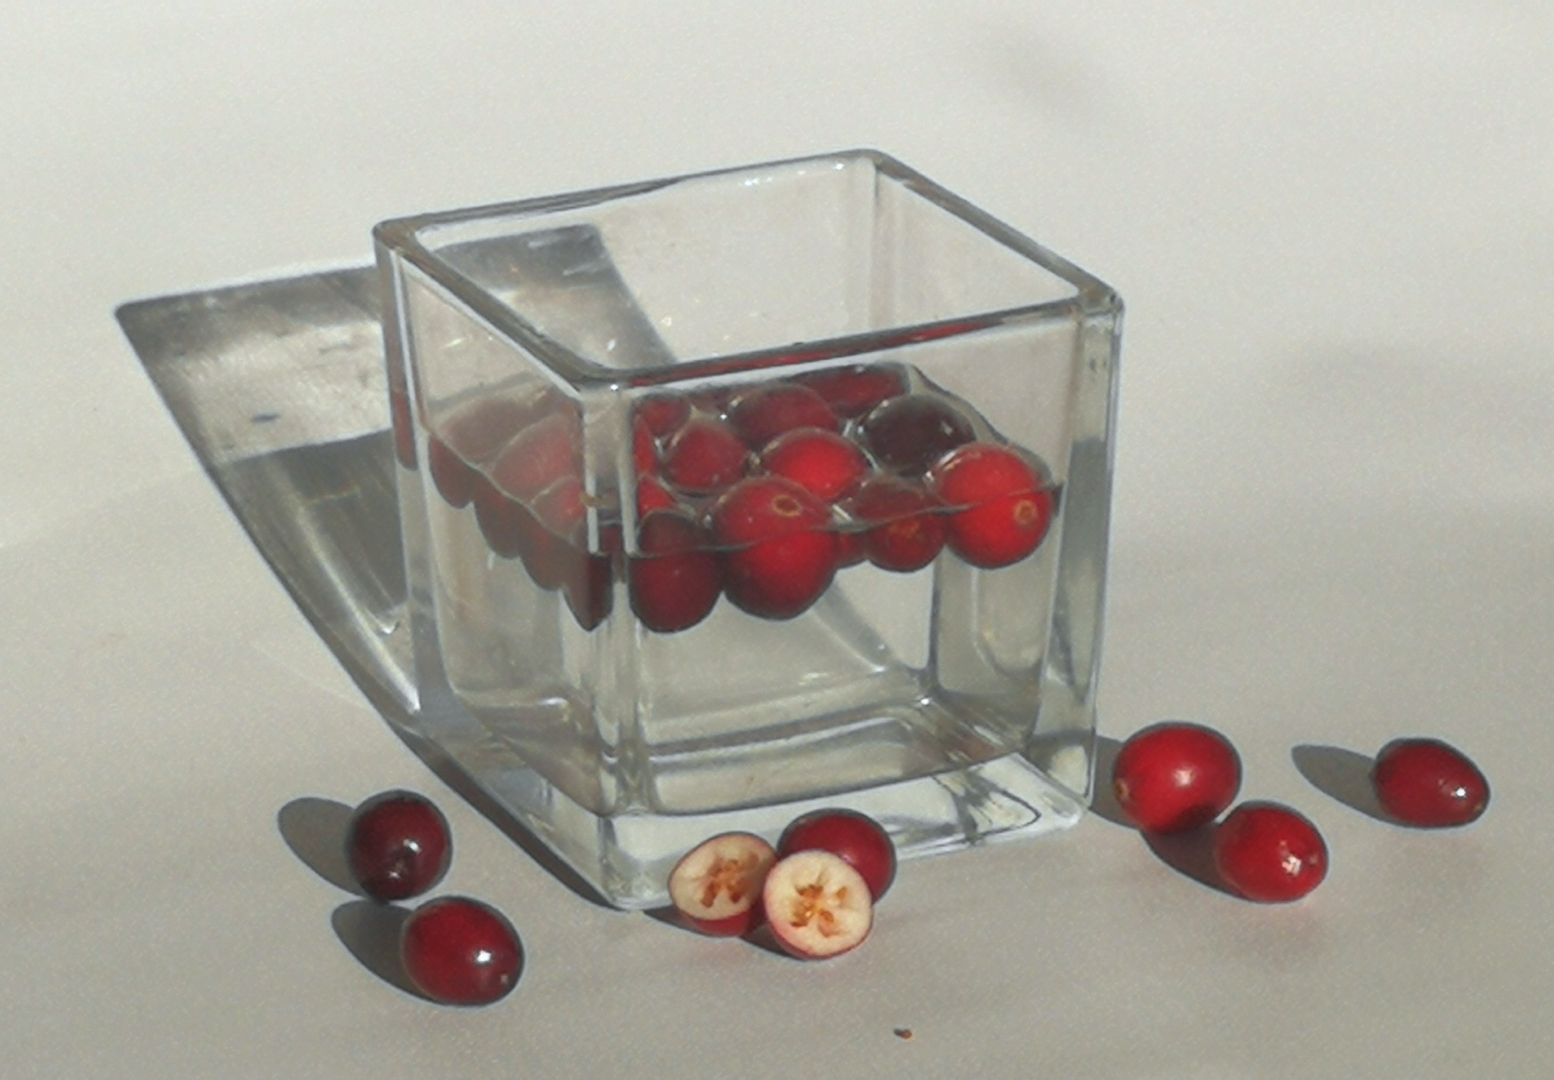 owoce żurawiny unoszące się na wodzie w szklanym pojemniku, obok rozrzycowne owoce, jeden przekrojony